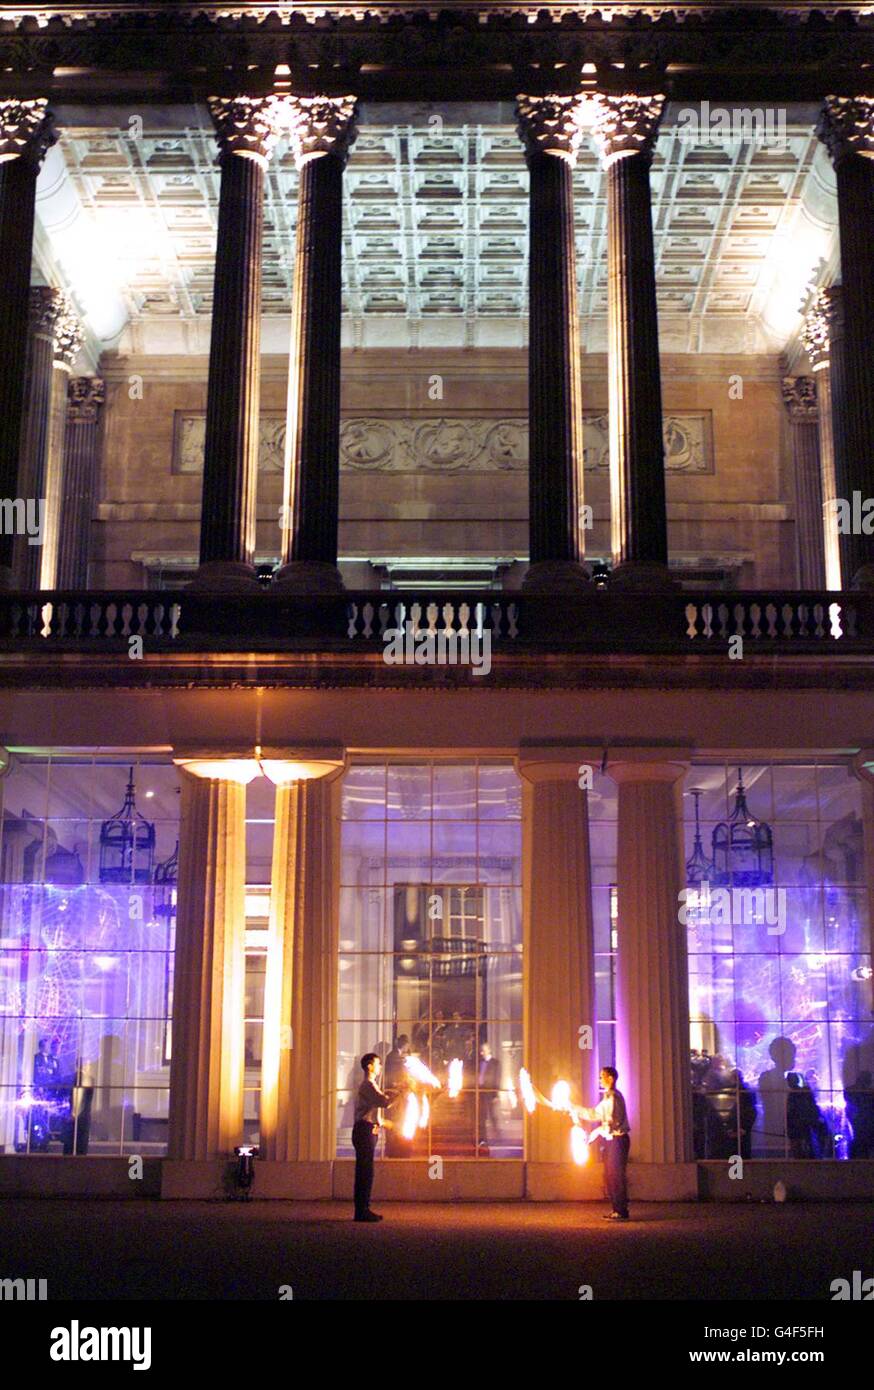 Am Eingang treten Feuerfresser auf, wenn Gäste heute Abend (Freitag) am Buckingham Palace ankommen. Die Königin veranstaltete eine Party für Hunderte von Gästen im Palace, um den 50. Geburtstag des Prinzen von Wales zu feiern. PA-Fotos (Reuters Rota) Stockfoto